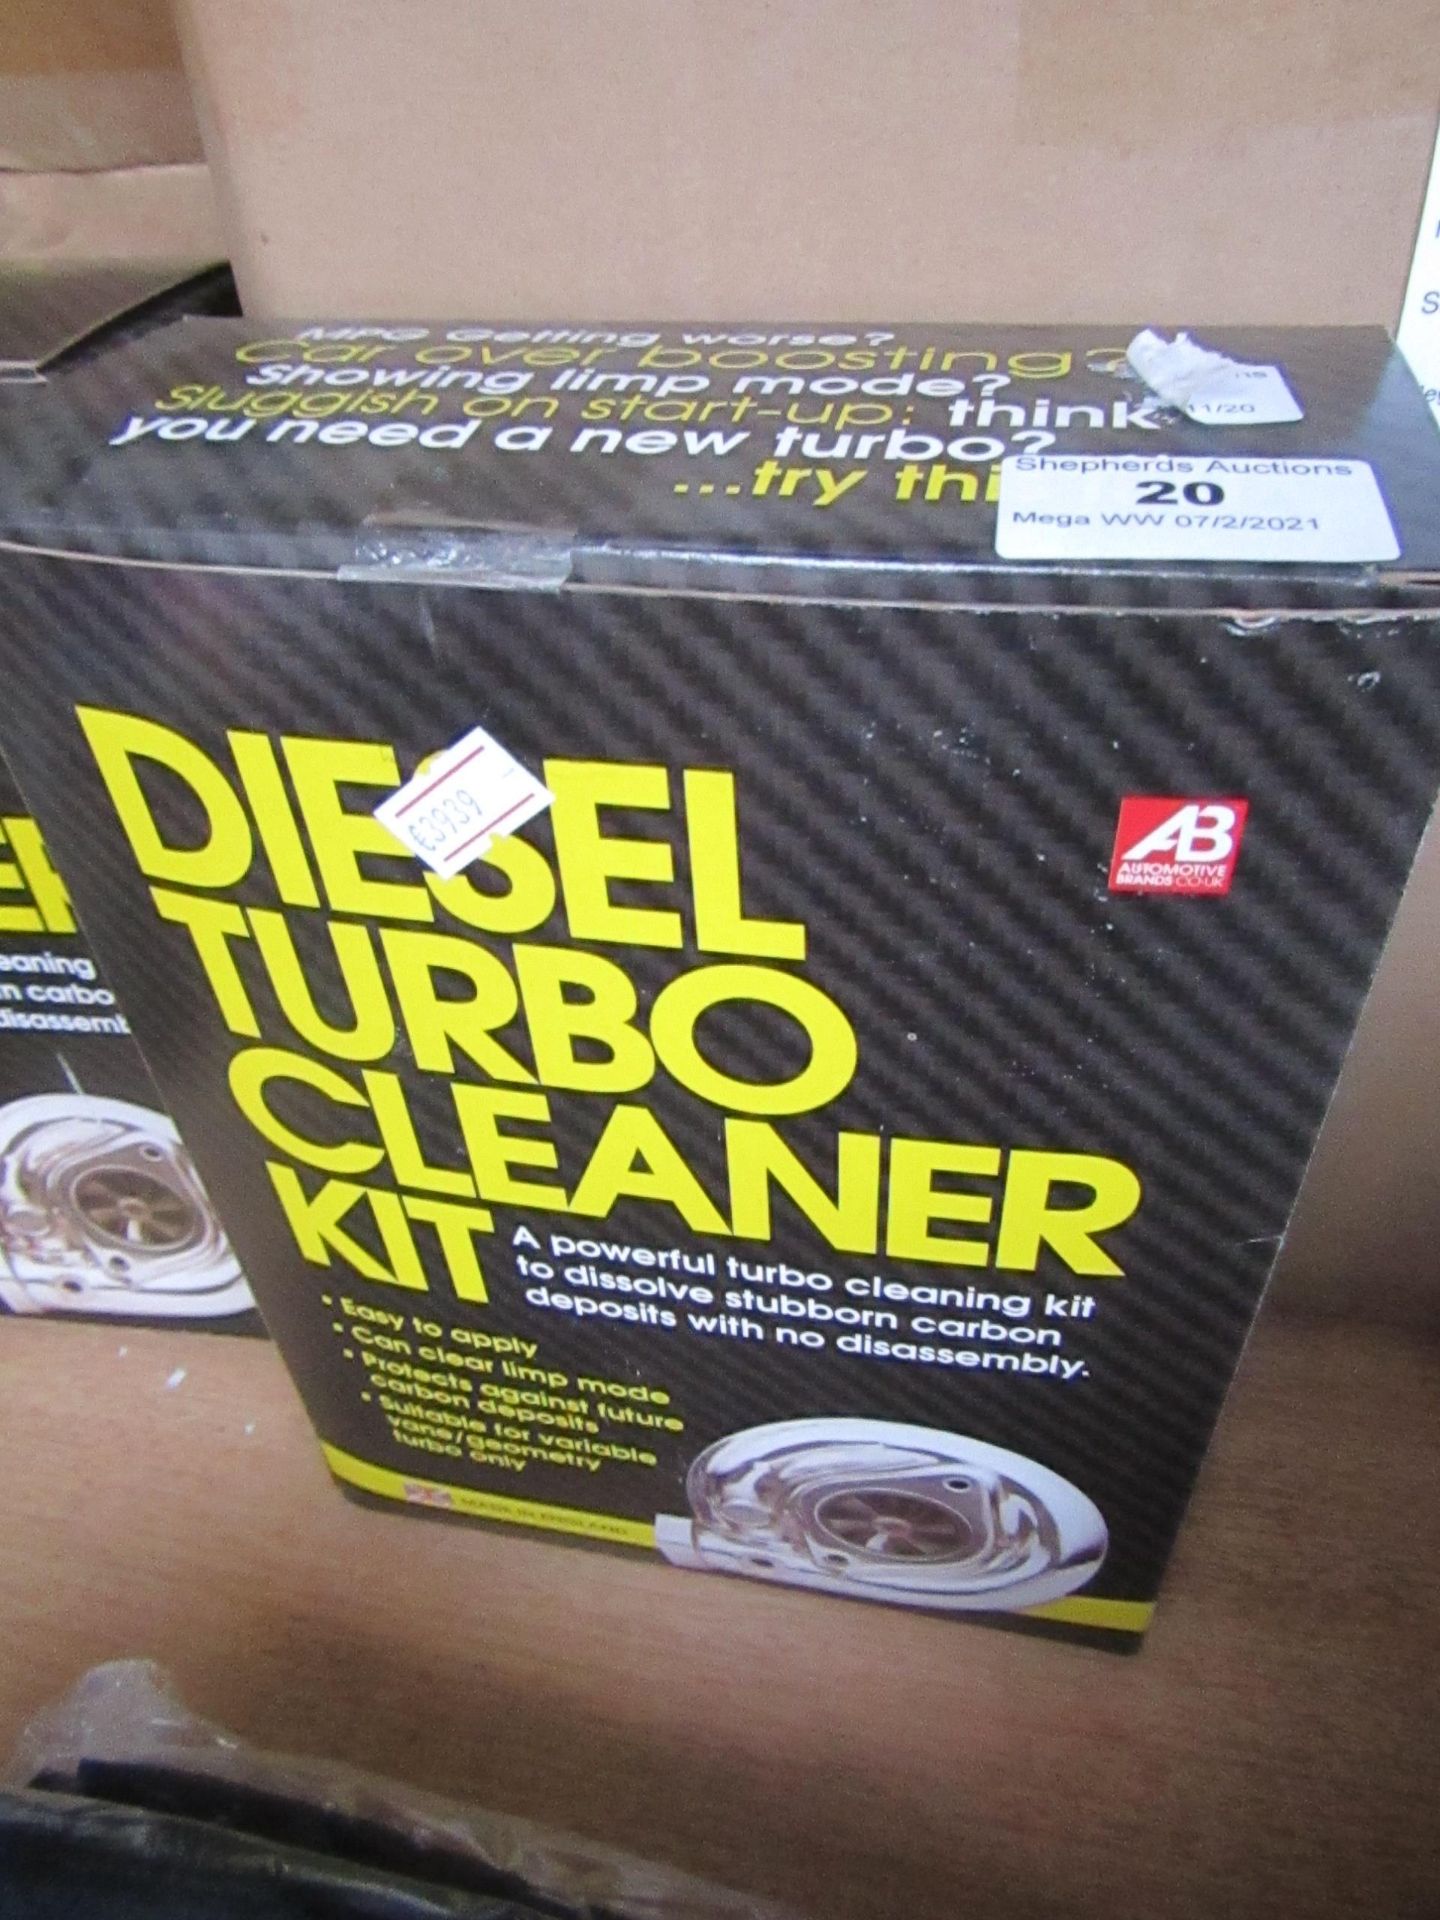 Diesel Turbo Cleaner Kit - Unused & Boxed